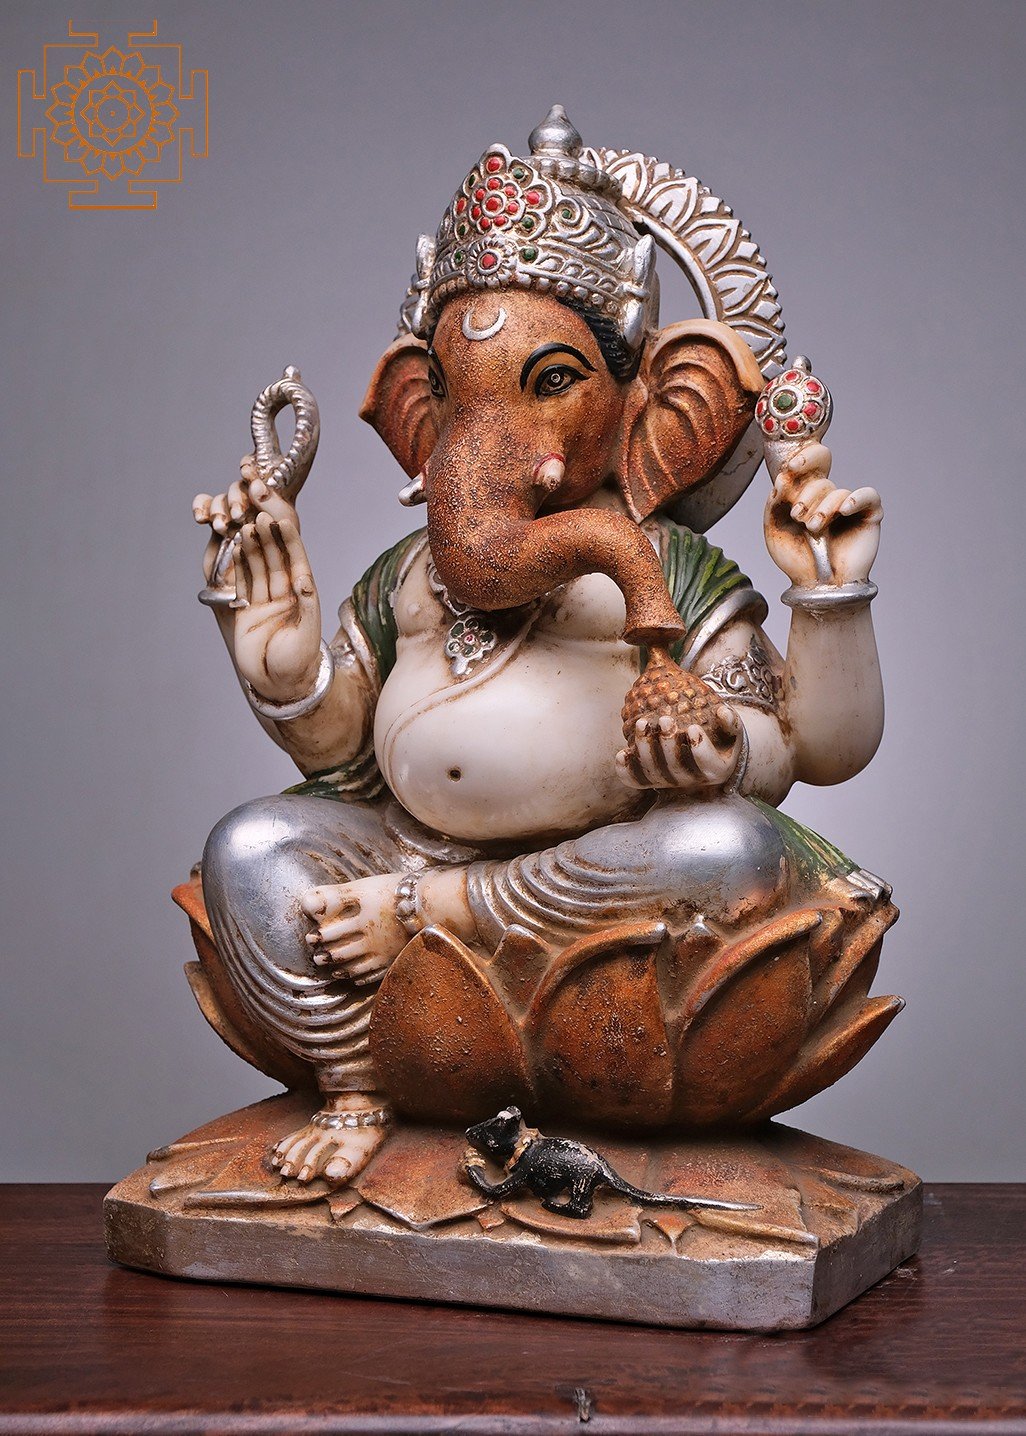 21 Lord Ganesha Seated on Lotus, Handmade